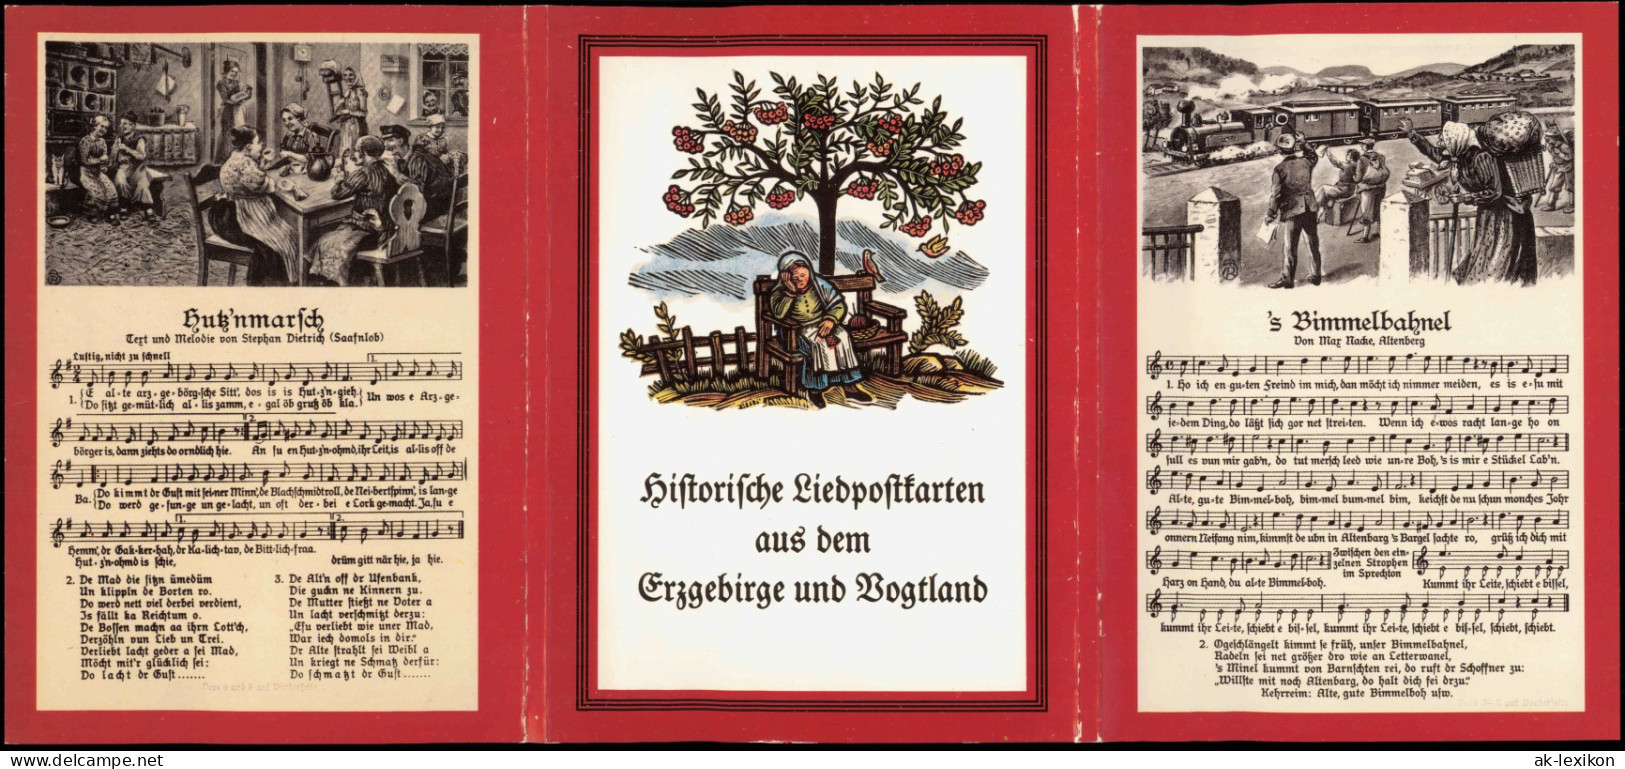 15 Historische Liedpostkarten Aus Dem Erzgebirge Und Vogtland
DDR 1989 - Musik